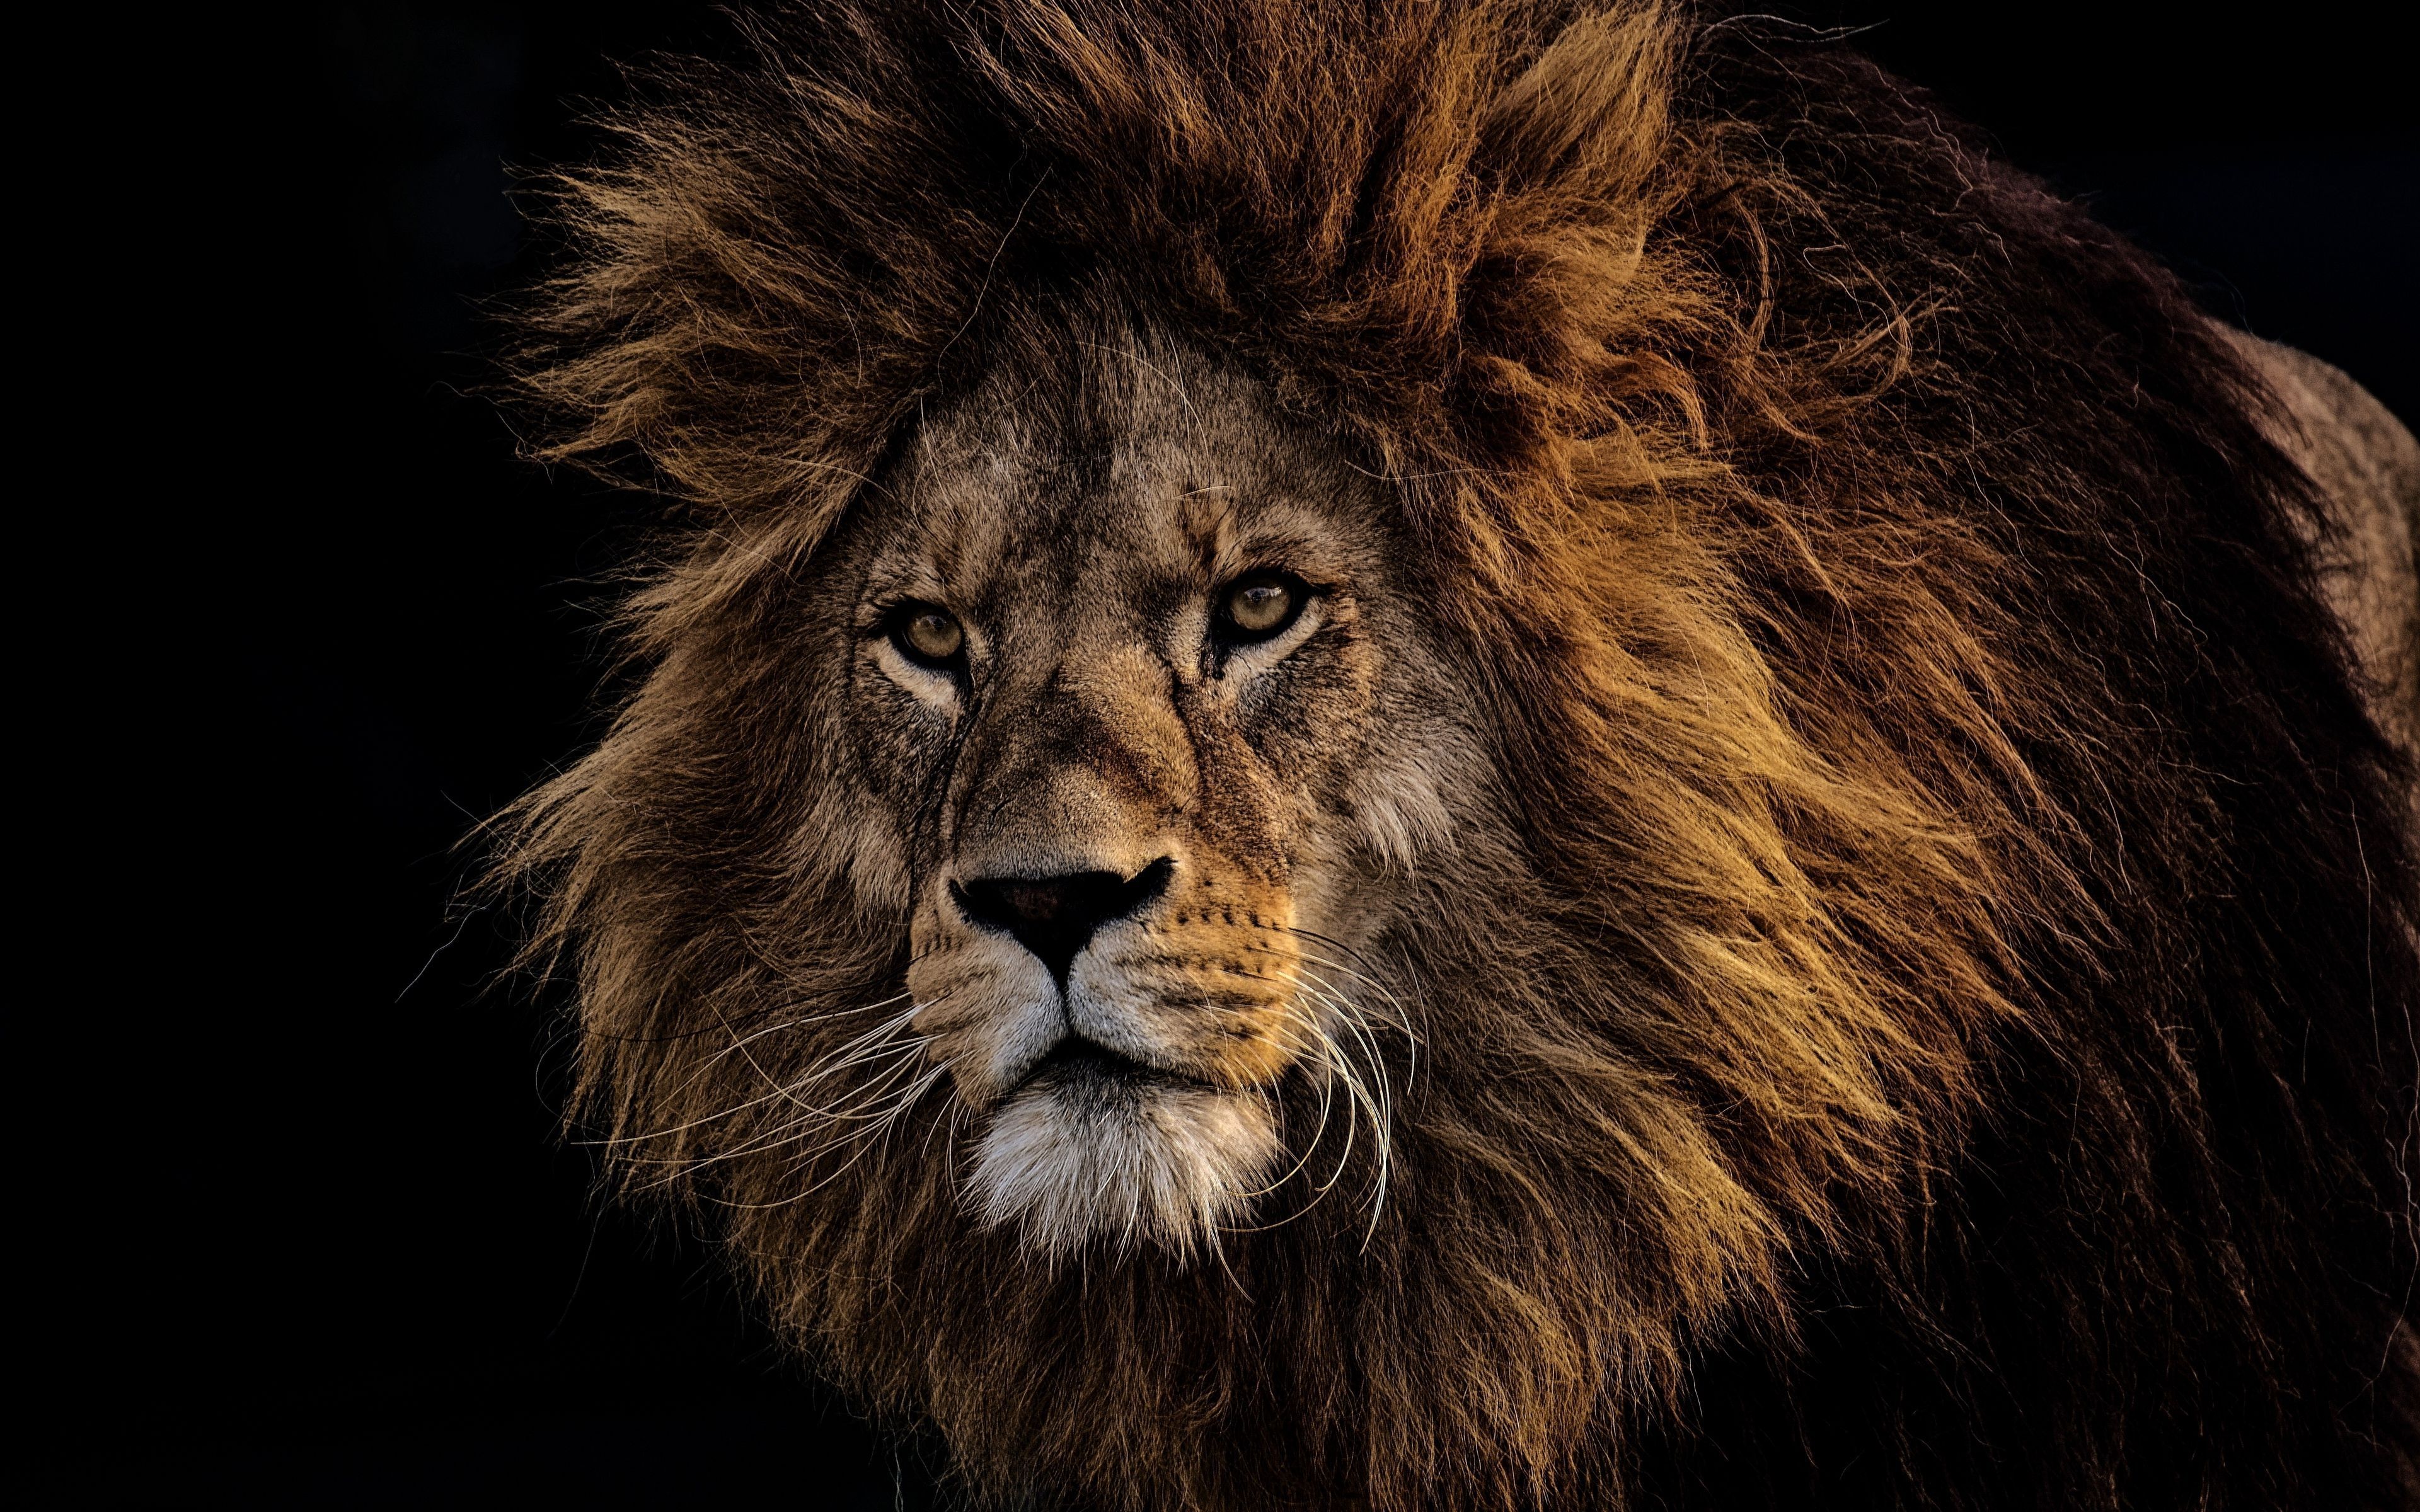 Lion 4K Ultra HD Wallpapers